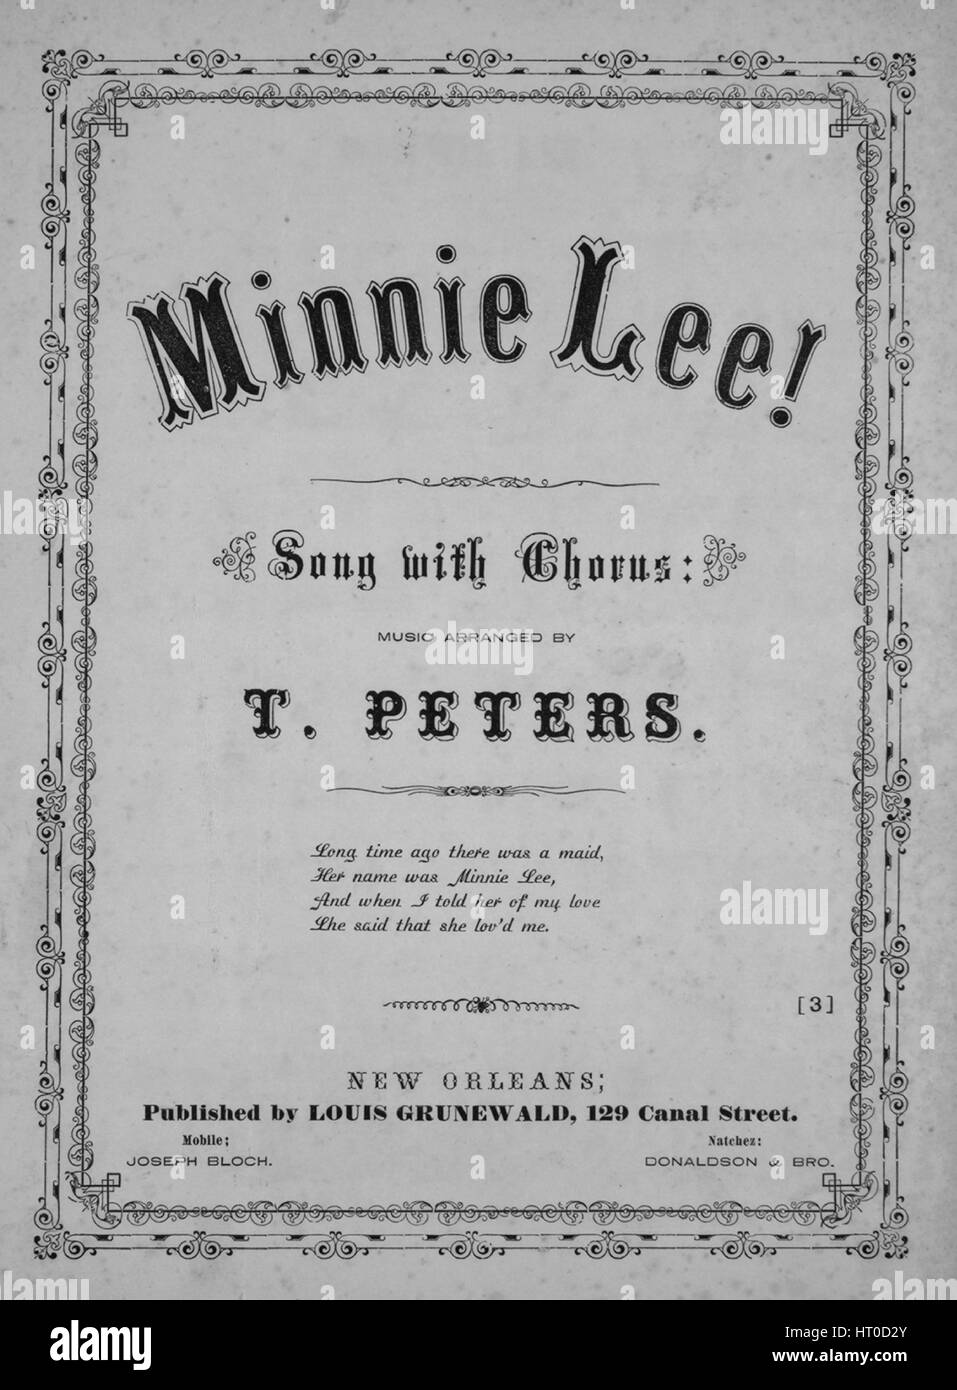 Titelbild der Noten des Liedes "Minnie Lee! Söhne mit Chor, mit  ursprünglichen Autorschaft Noten lesen 'Musik arrangiert von T Peters',  1865. Der Verlag als "Louis Grunewald, 129 Canal Street" aufgeführt ist, die